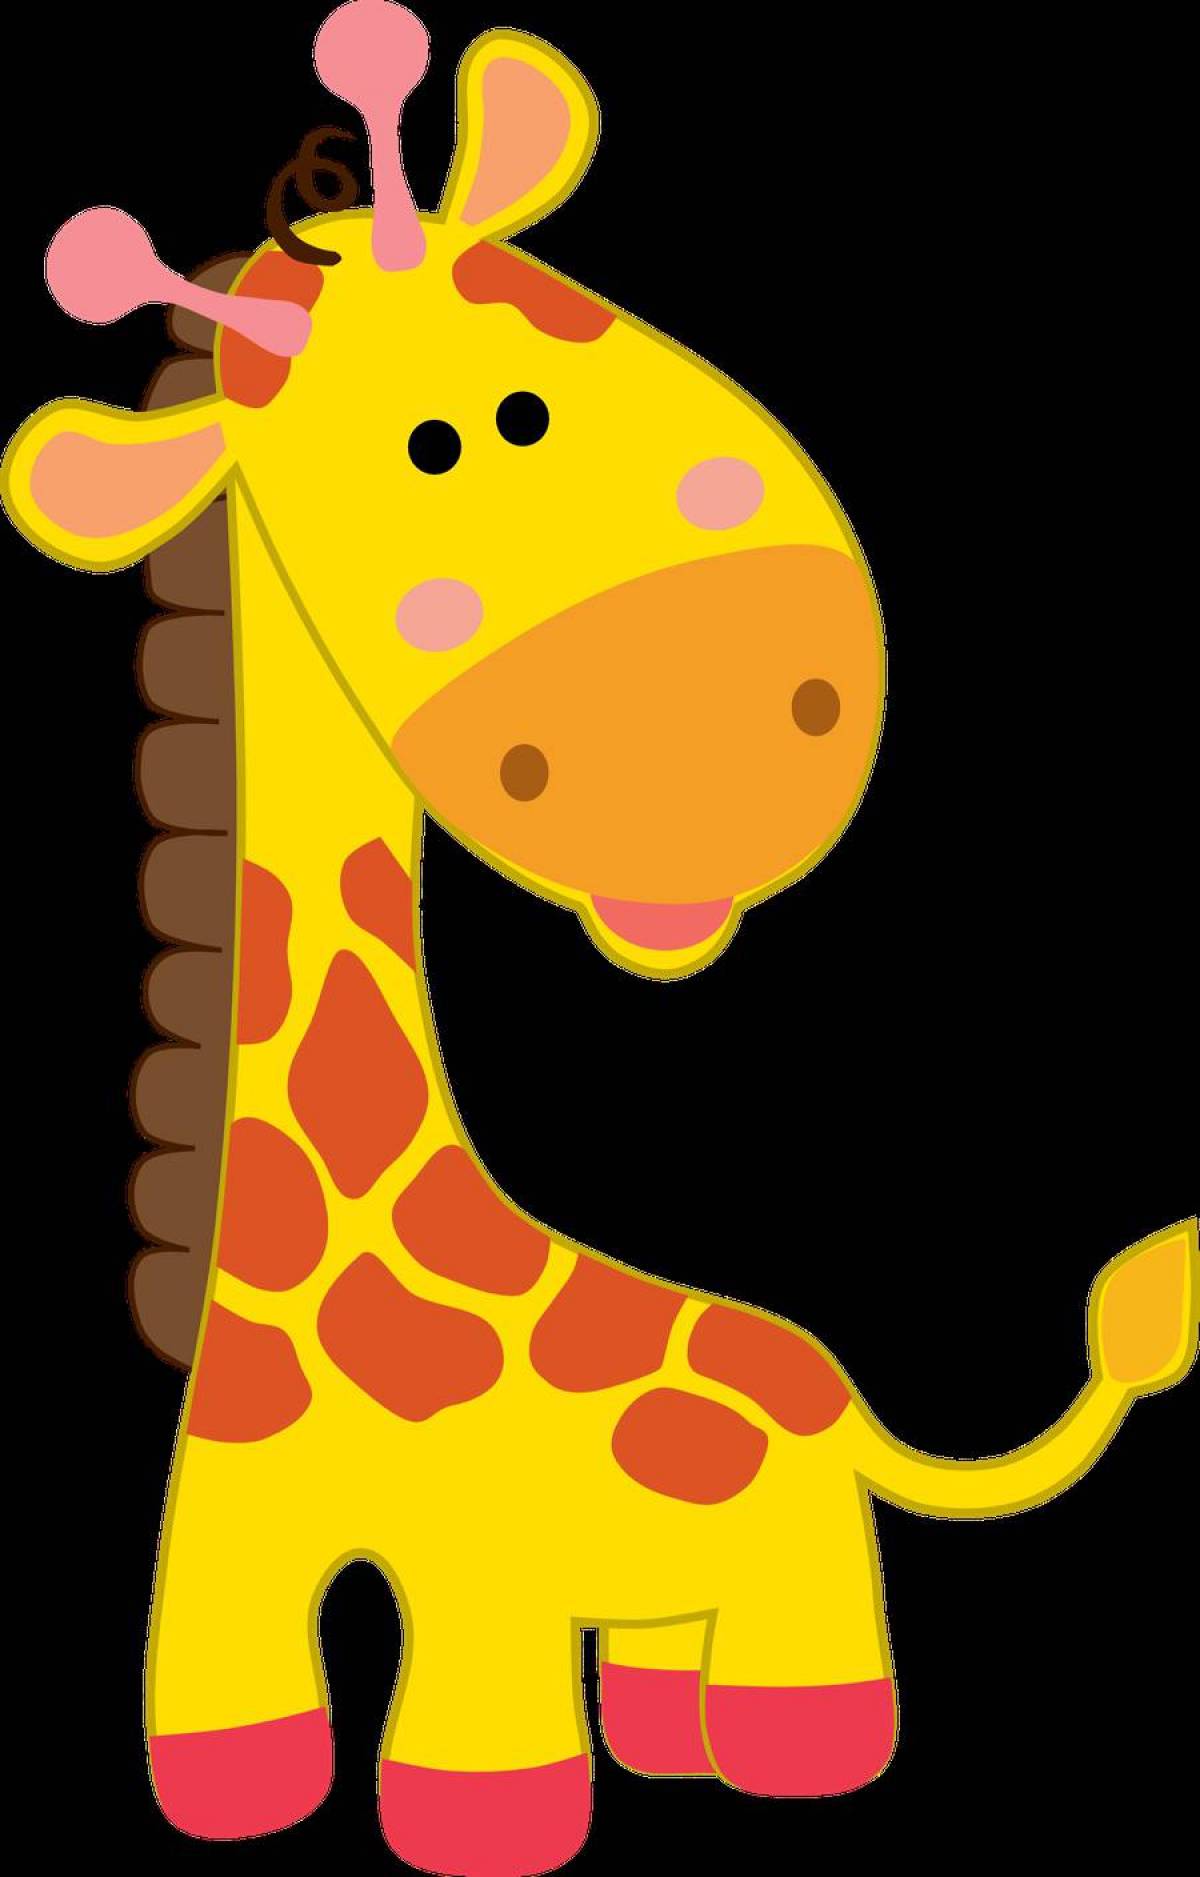 Рисунок жираф для детей #8